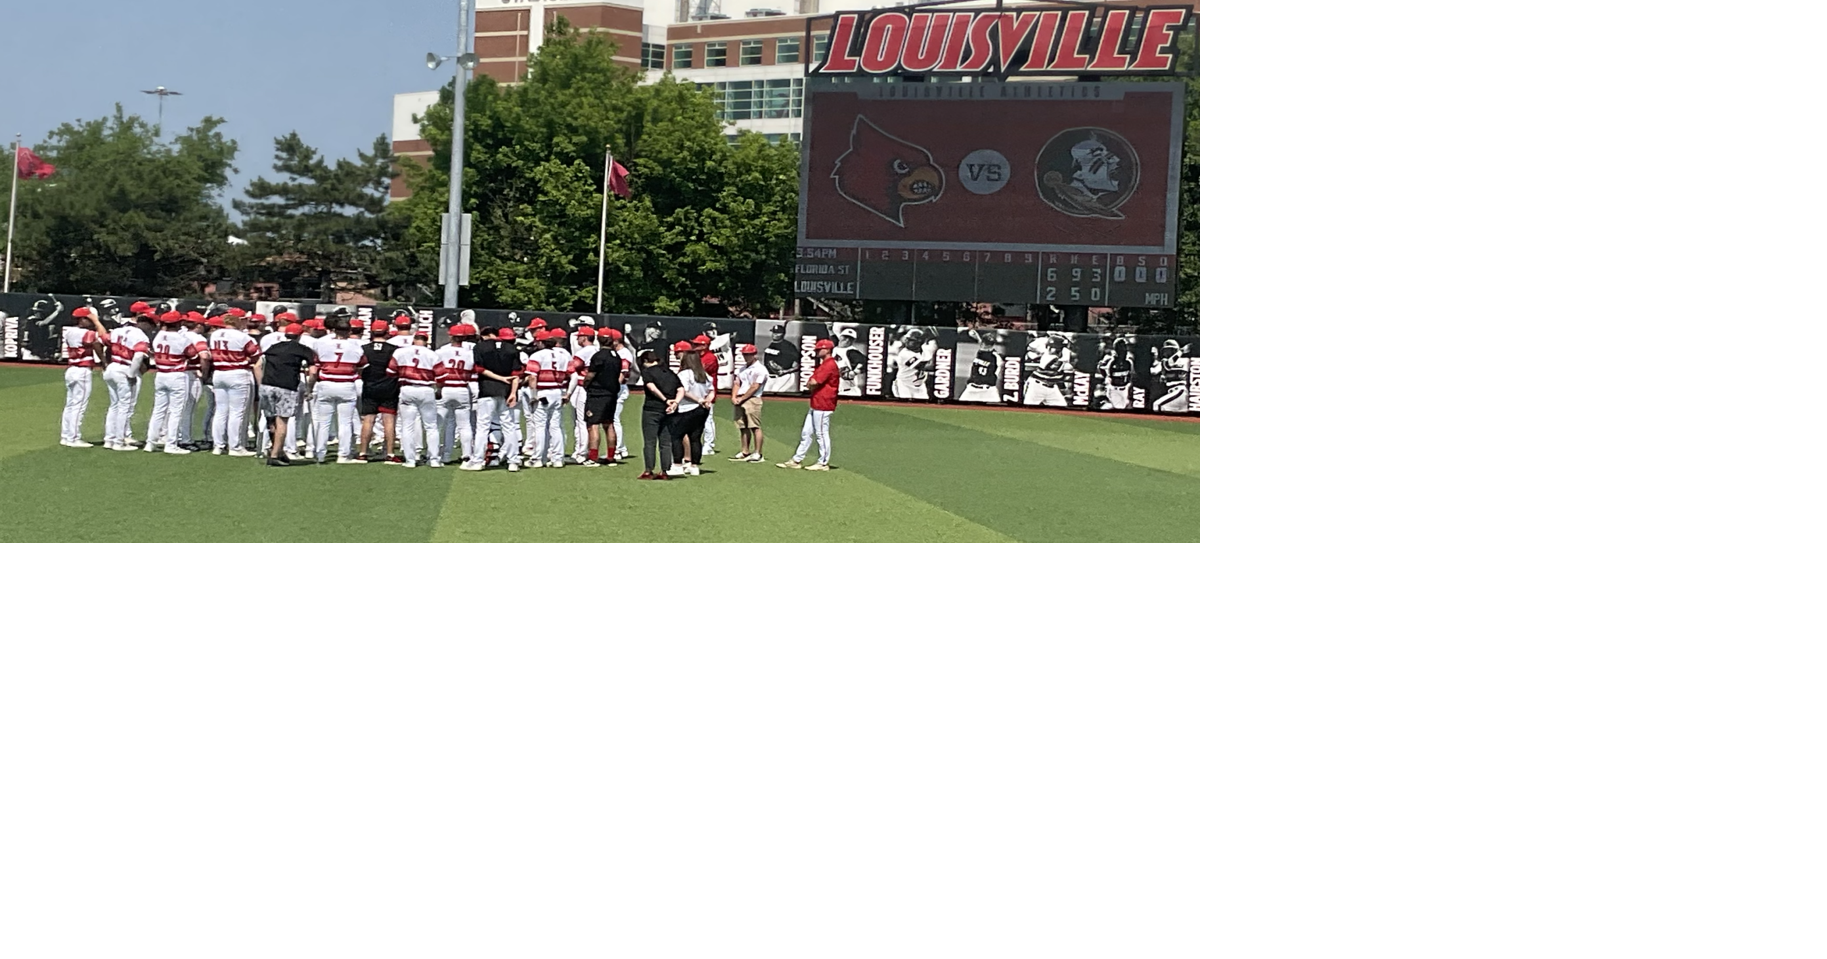 University of Louisville baseball team